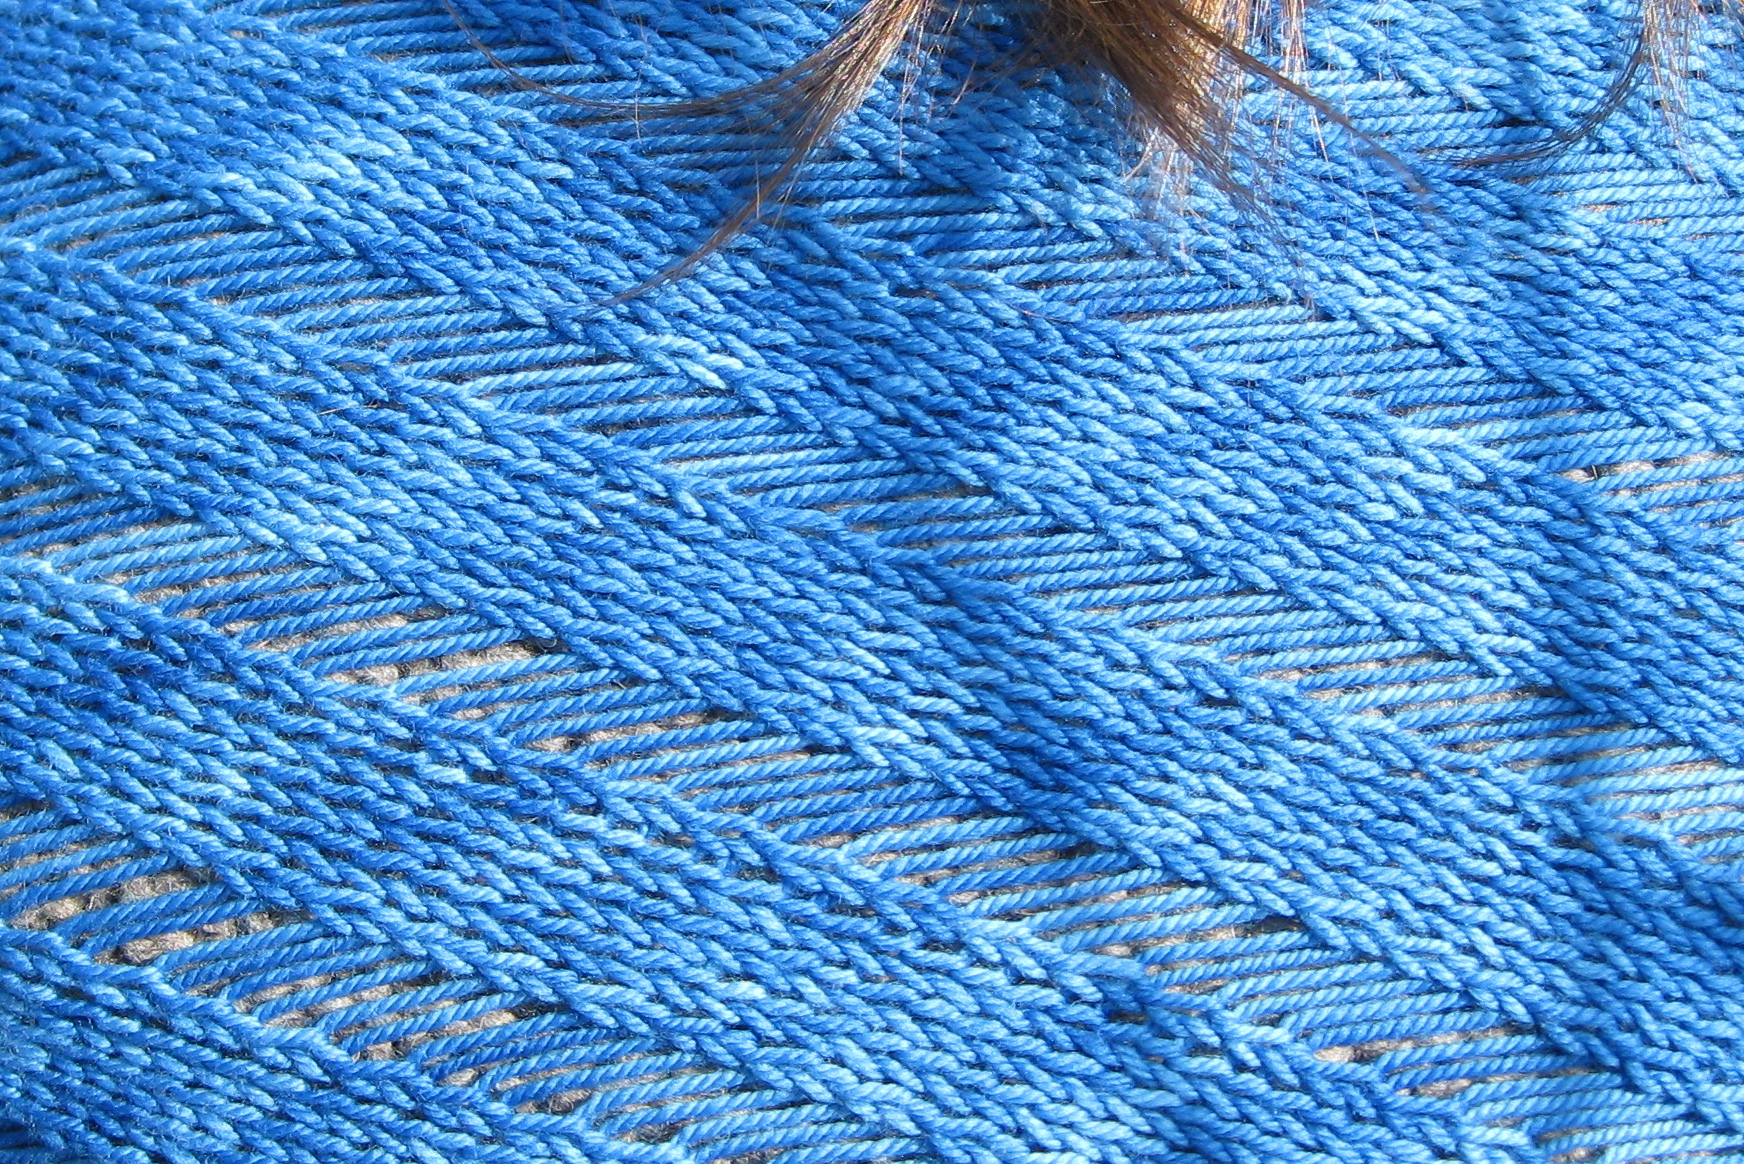 Variegated Yarn Patterns Knitting Clapotis Stockinette